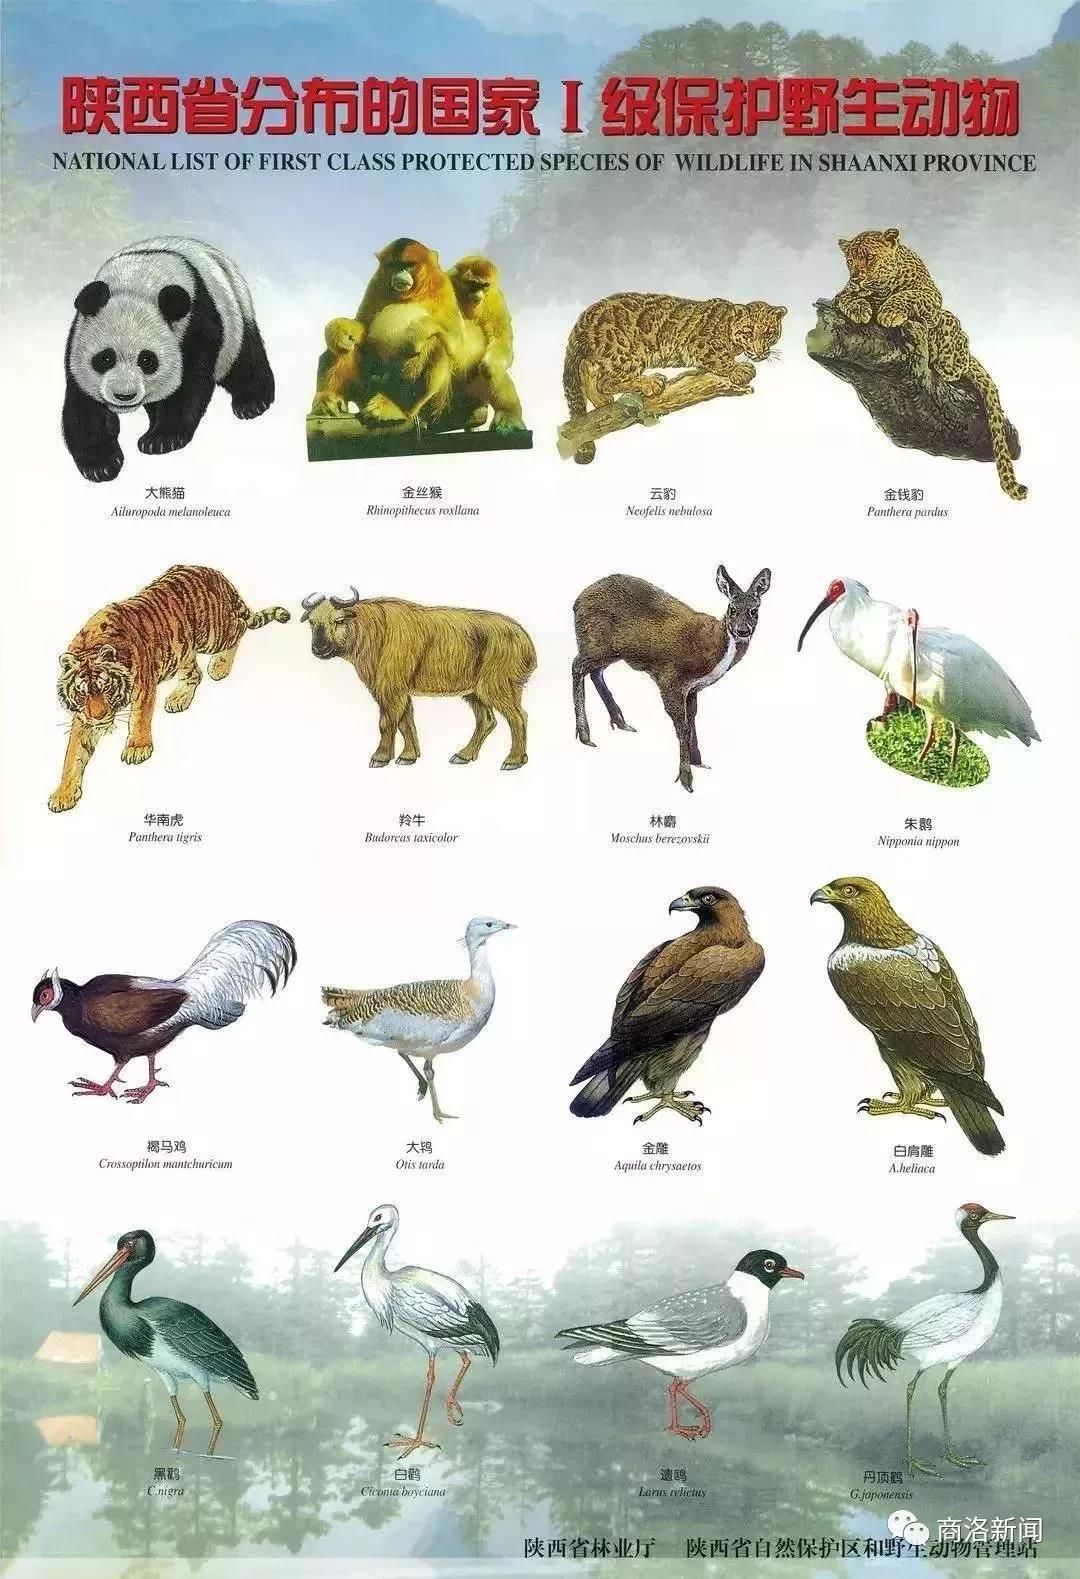 重点保护的秦岭野生动物有哪些?